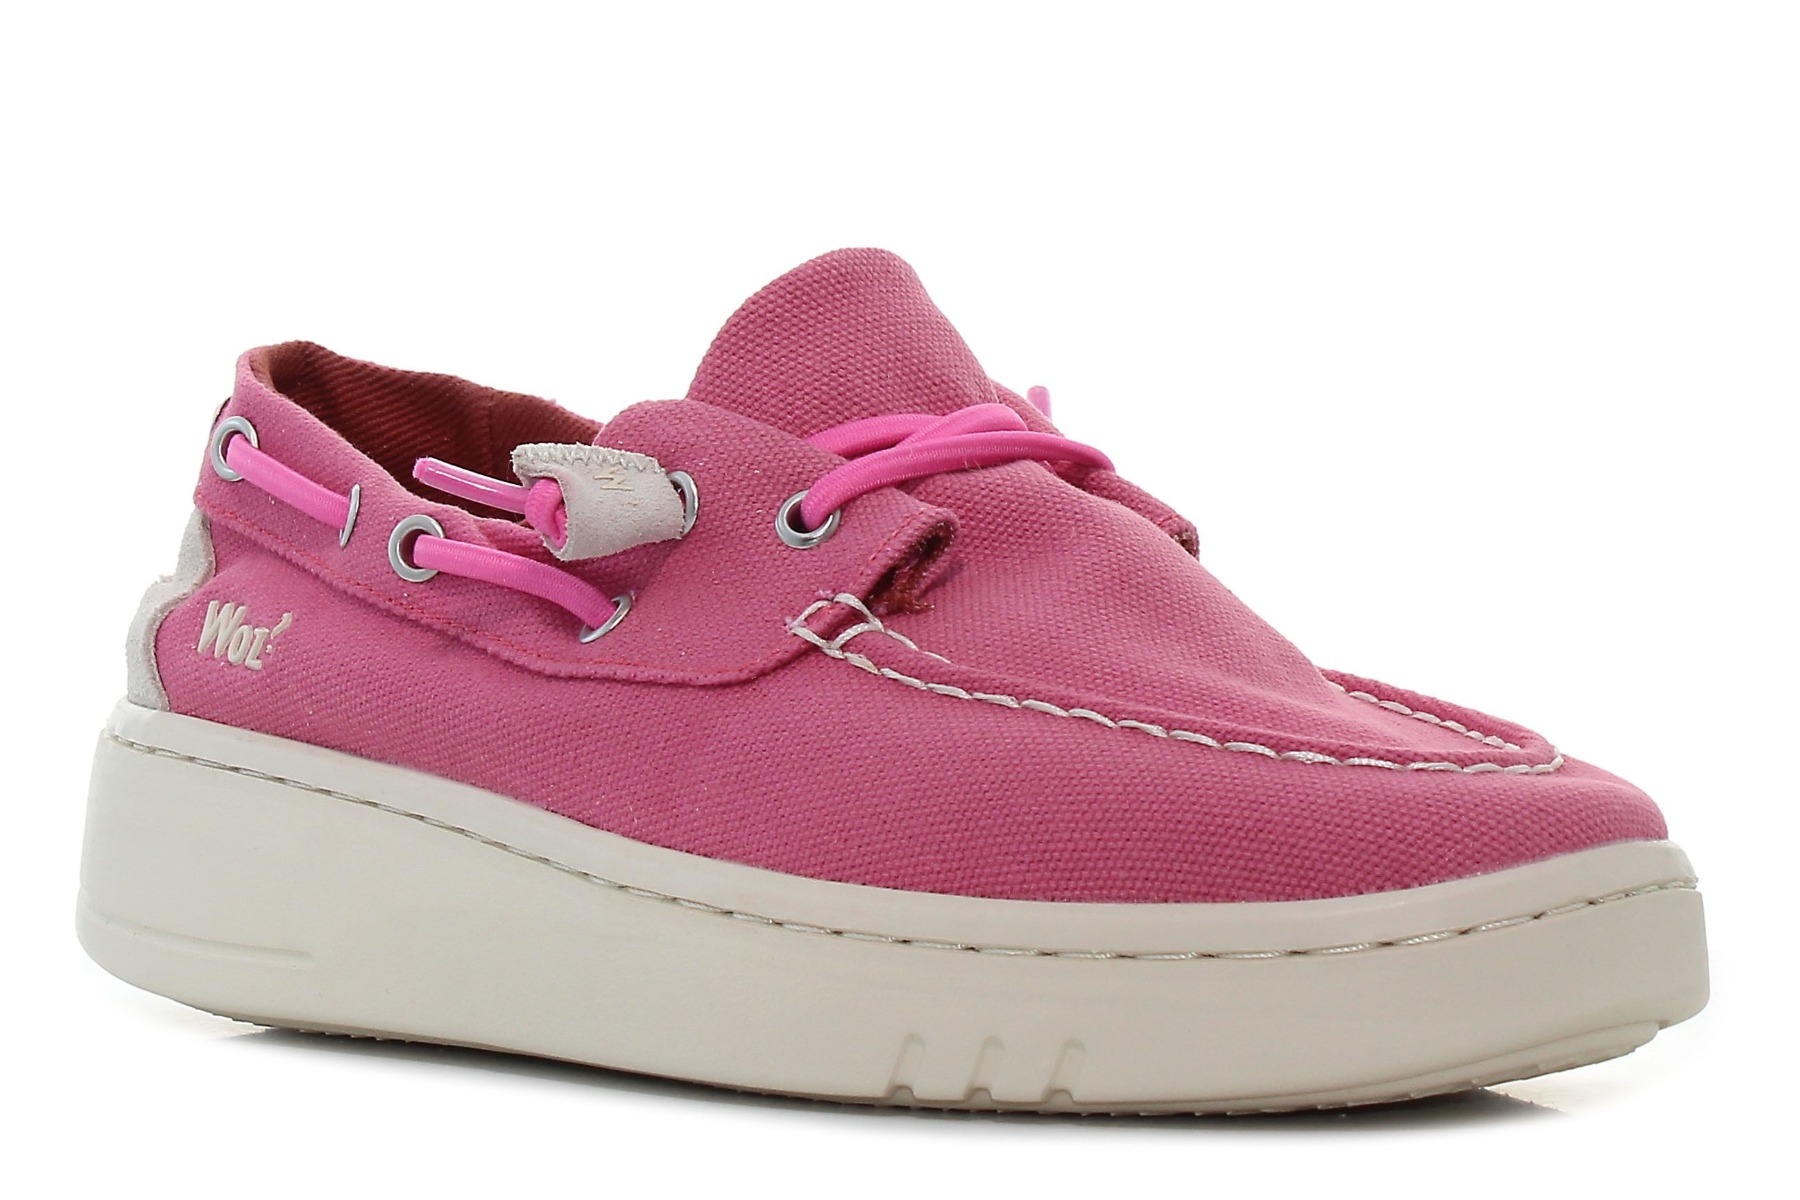 Woz - Ellen rózsaszín női cipő